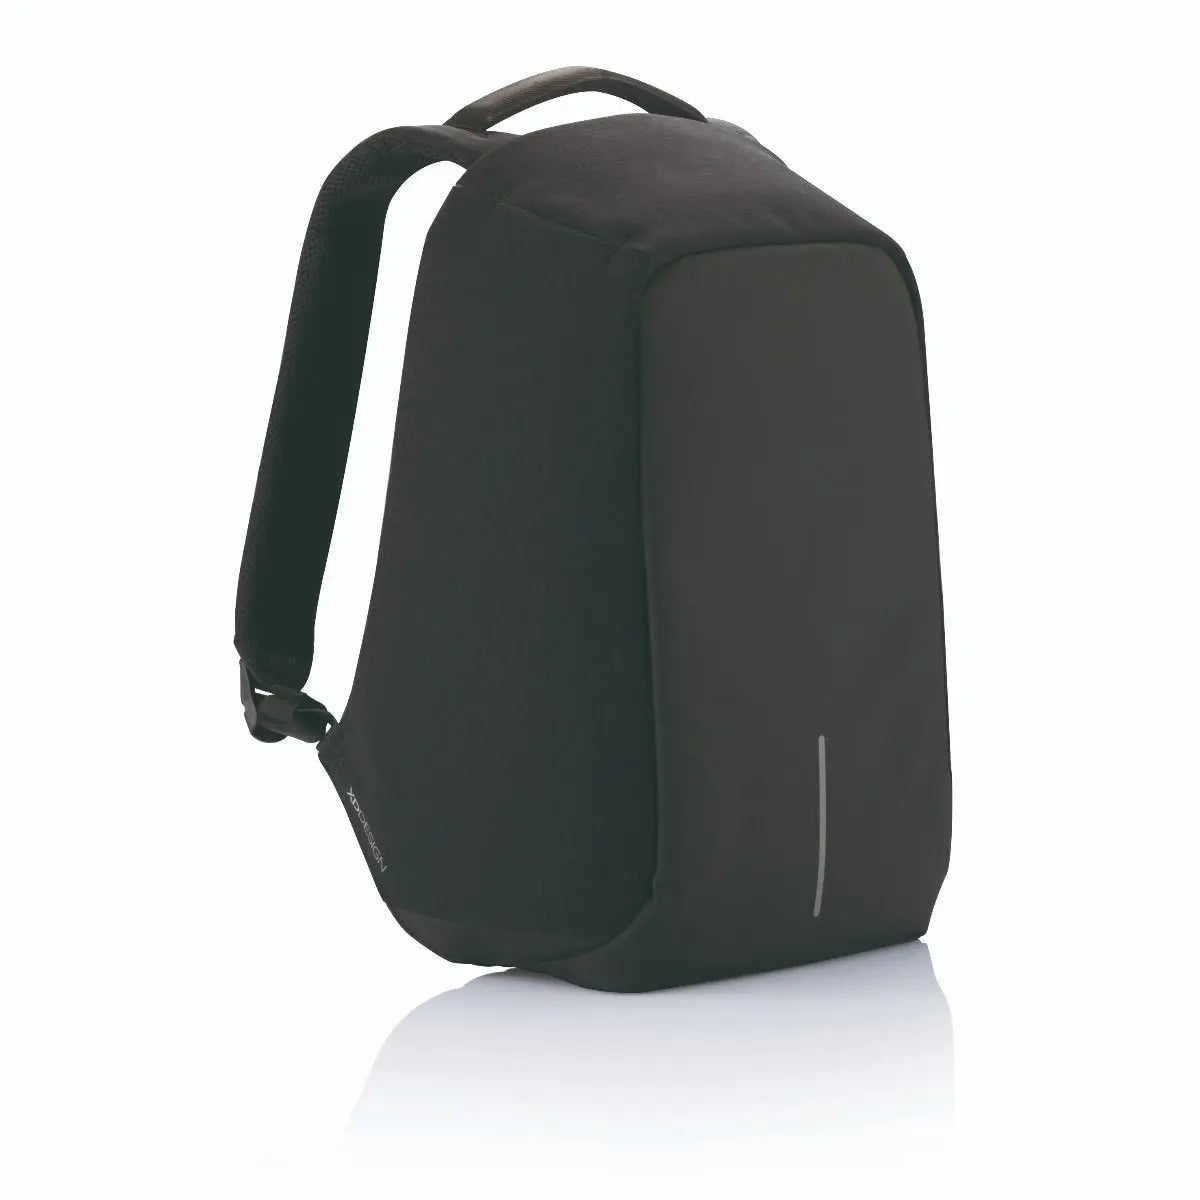  XD Design Bobby Original Anti-Theft Laptop USB Backpack Black  (Unisex Bag) : Clothing, Shoes & Jewelry